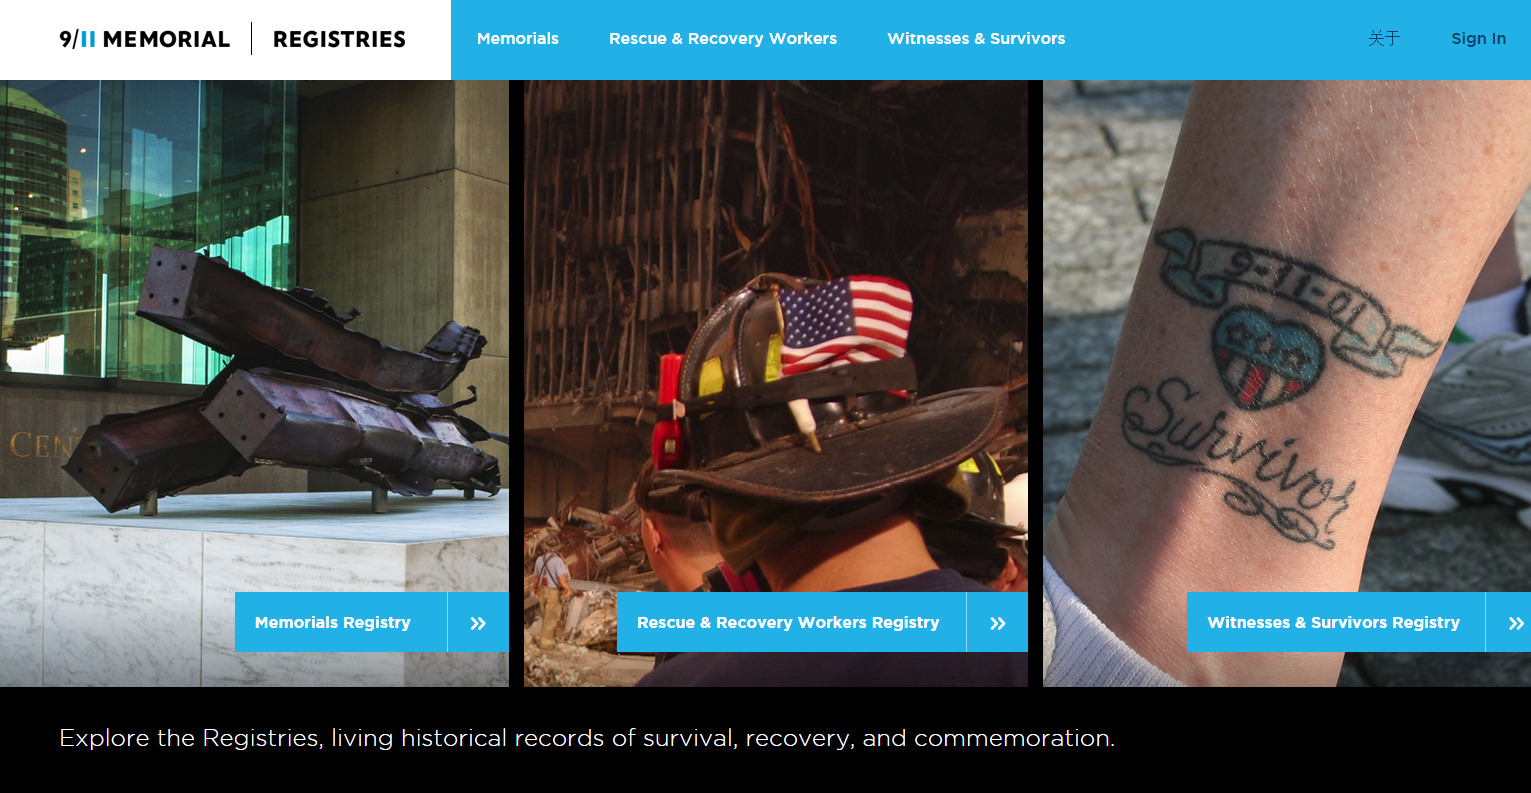 A screenshot of the 9/11 Memorial & Museum website shows the Memorial registries portal.